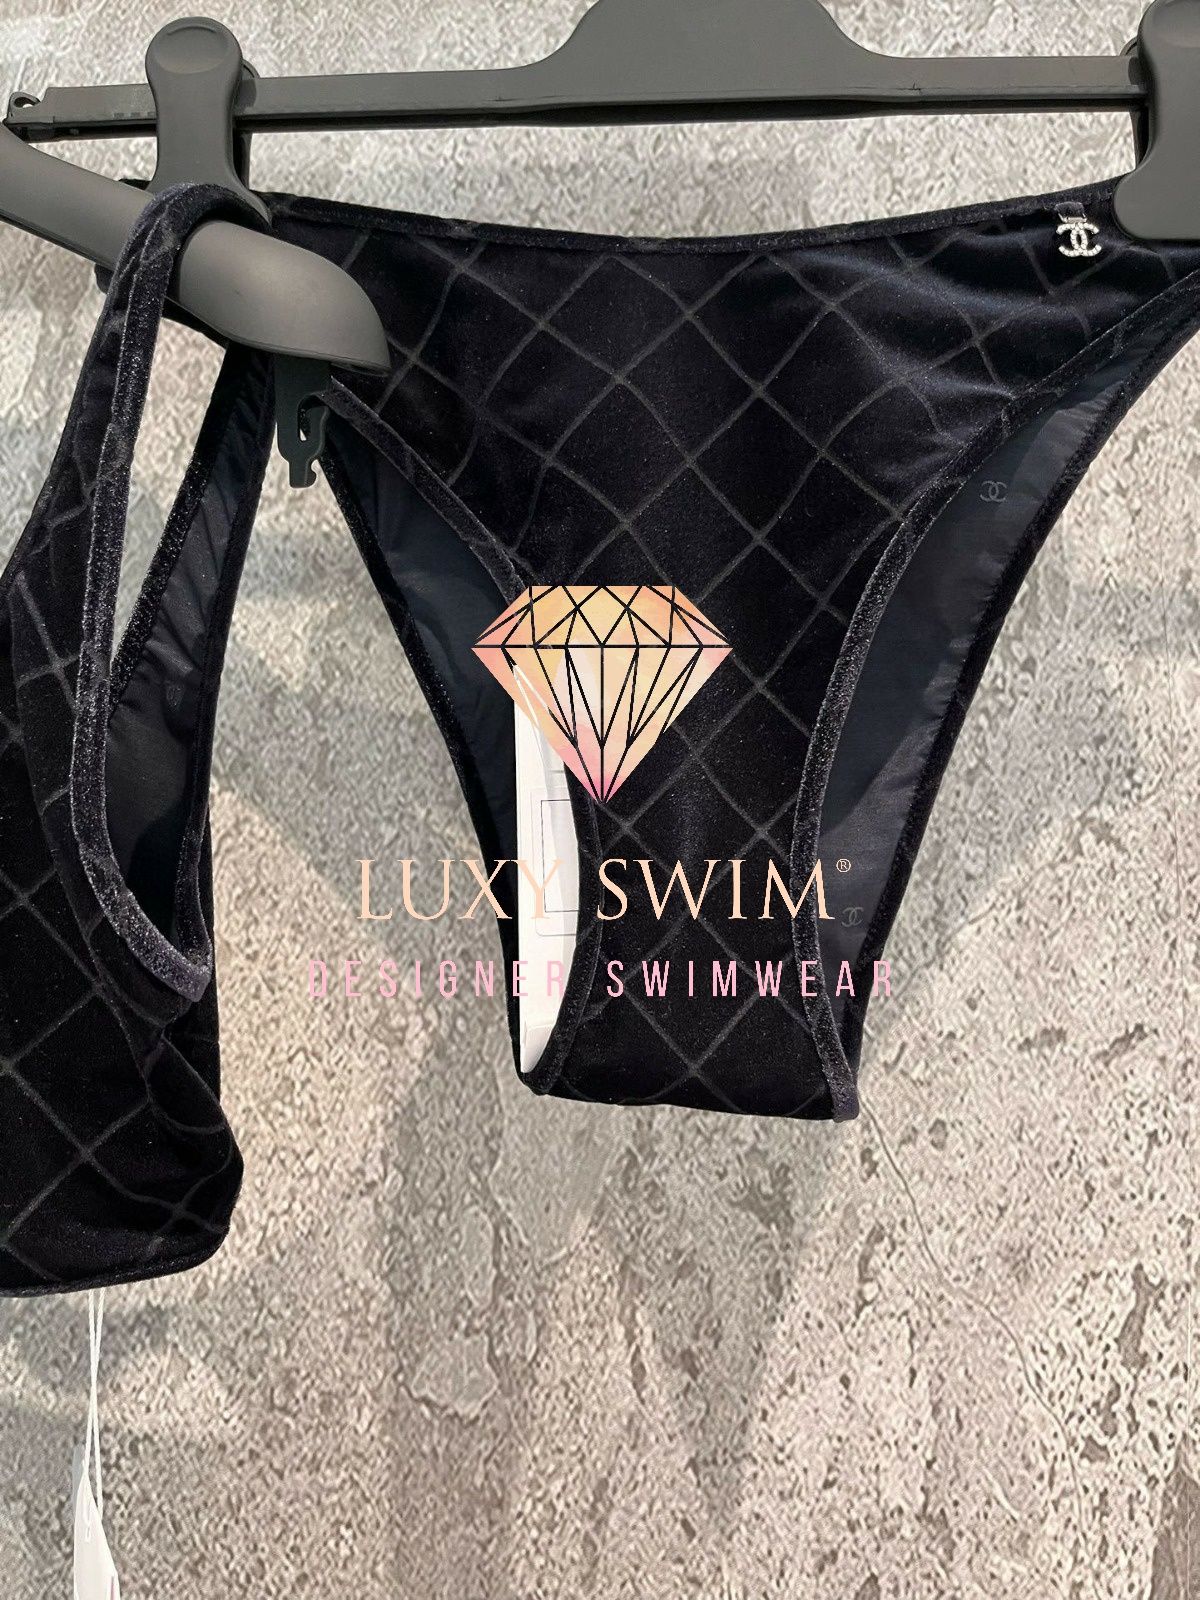 CHANEL® Luksusowy strój CC® kąpielowy ekskluzywne bikini